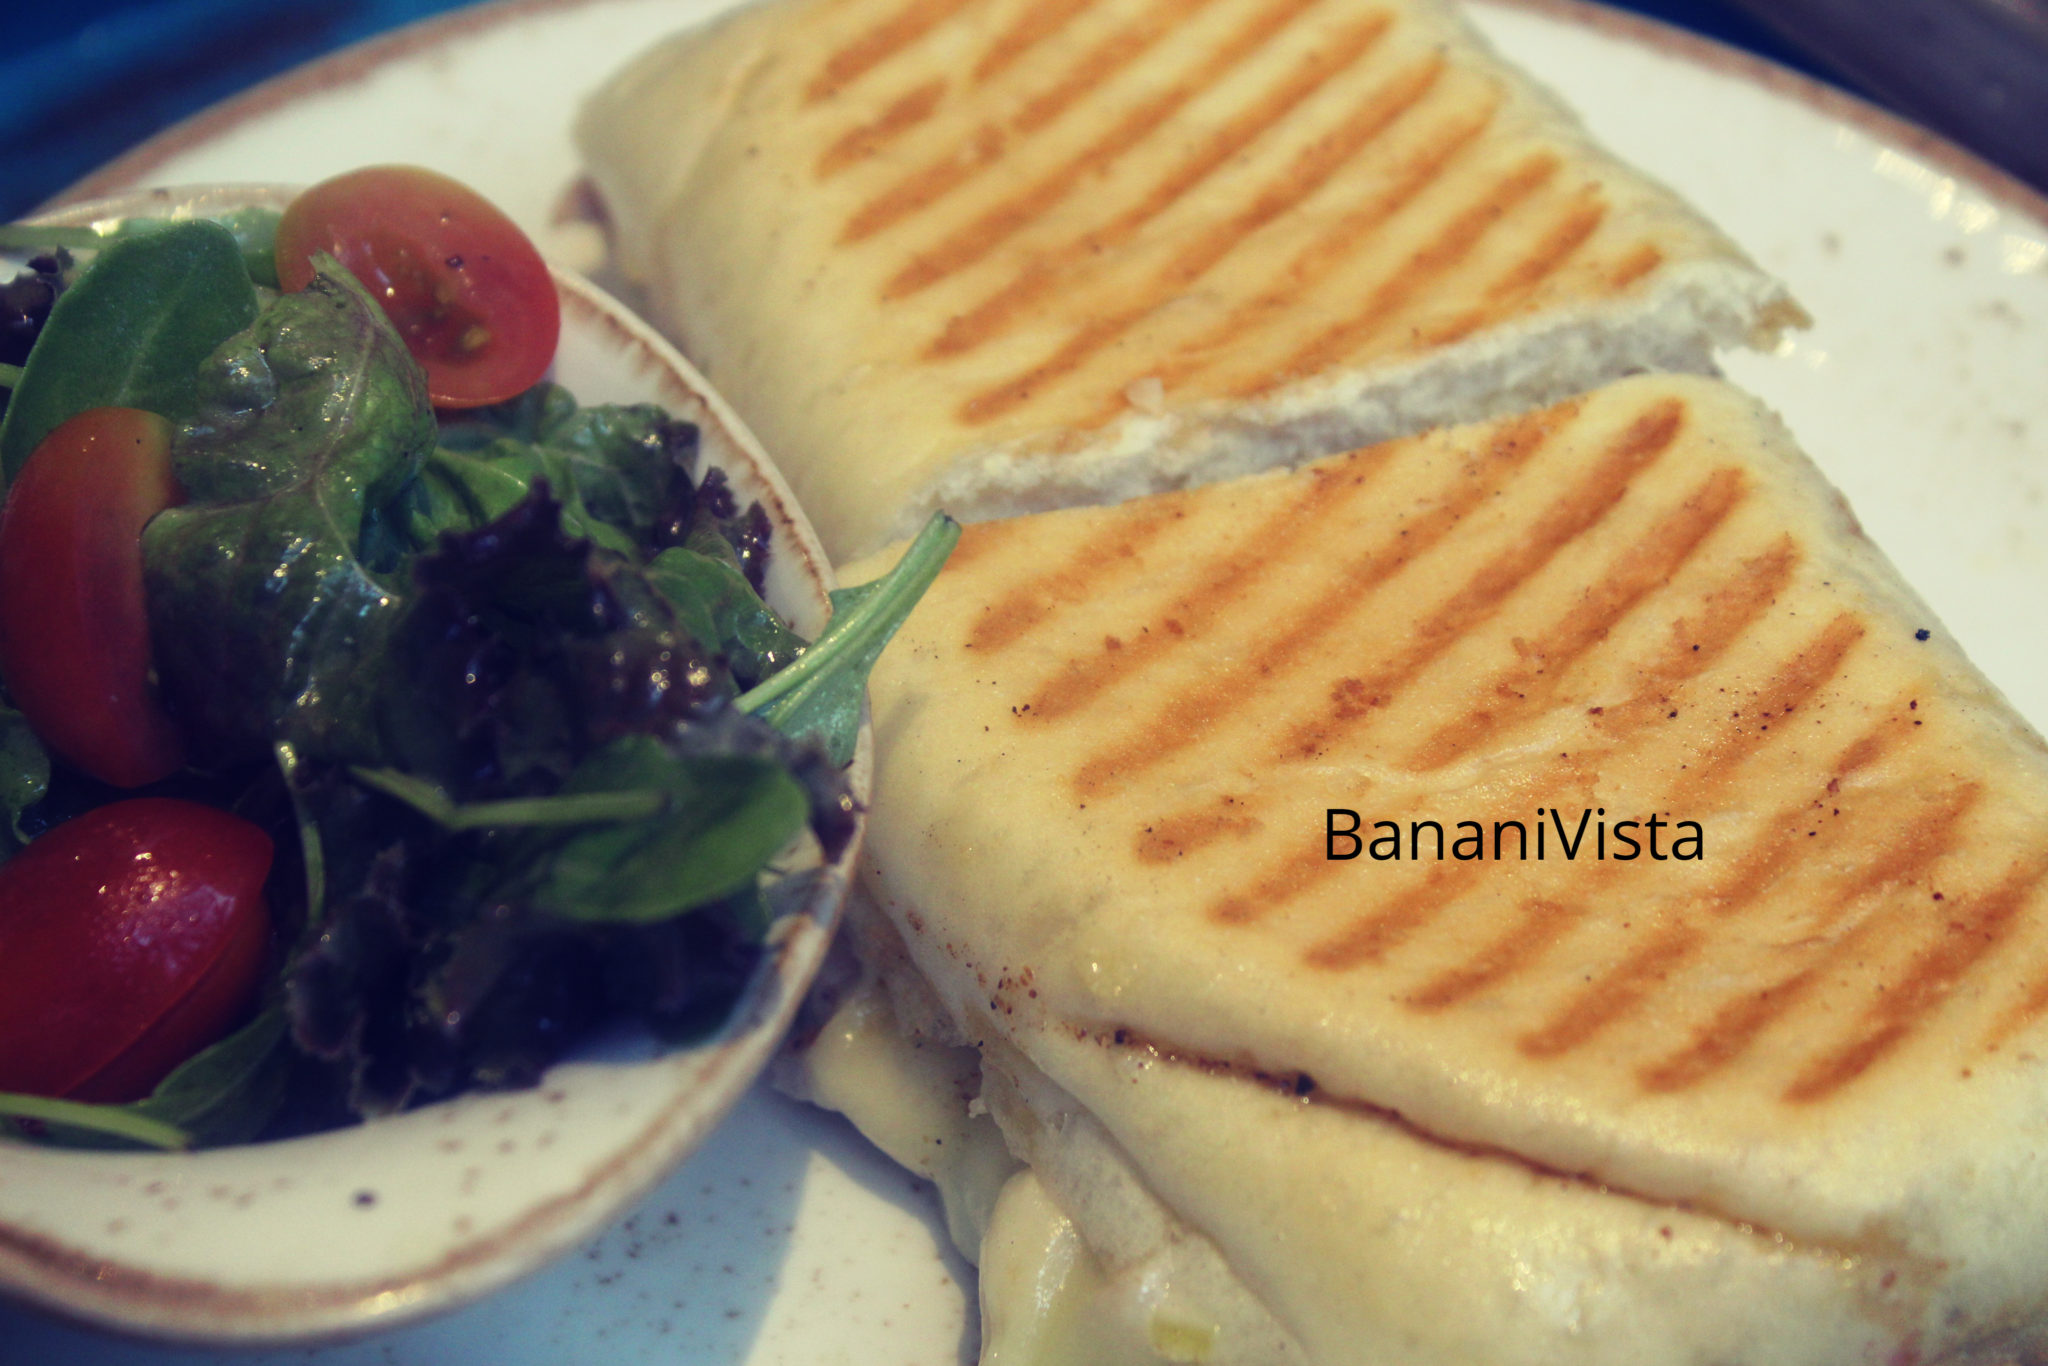 Chicken and cheese sandwich, Menu, BananiVista